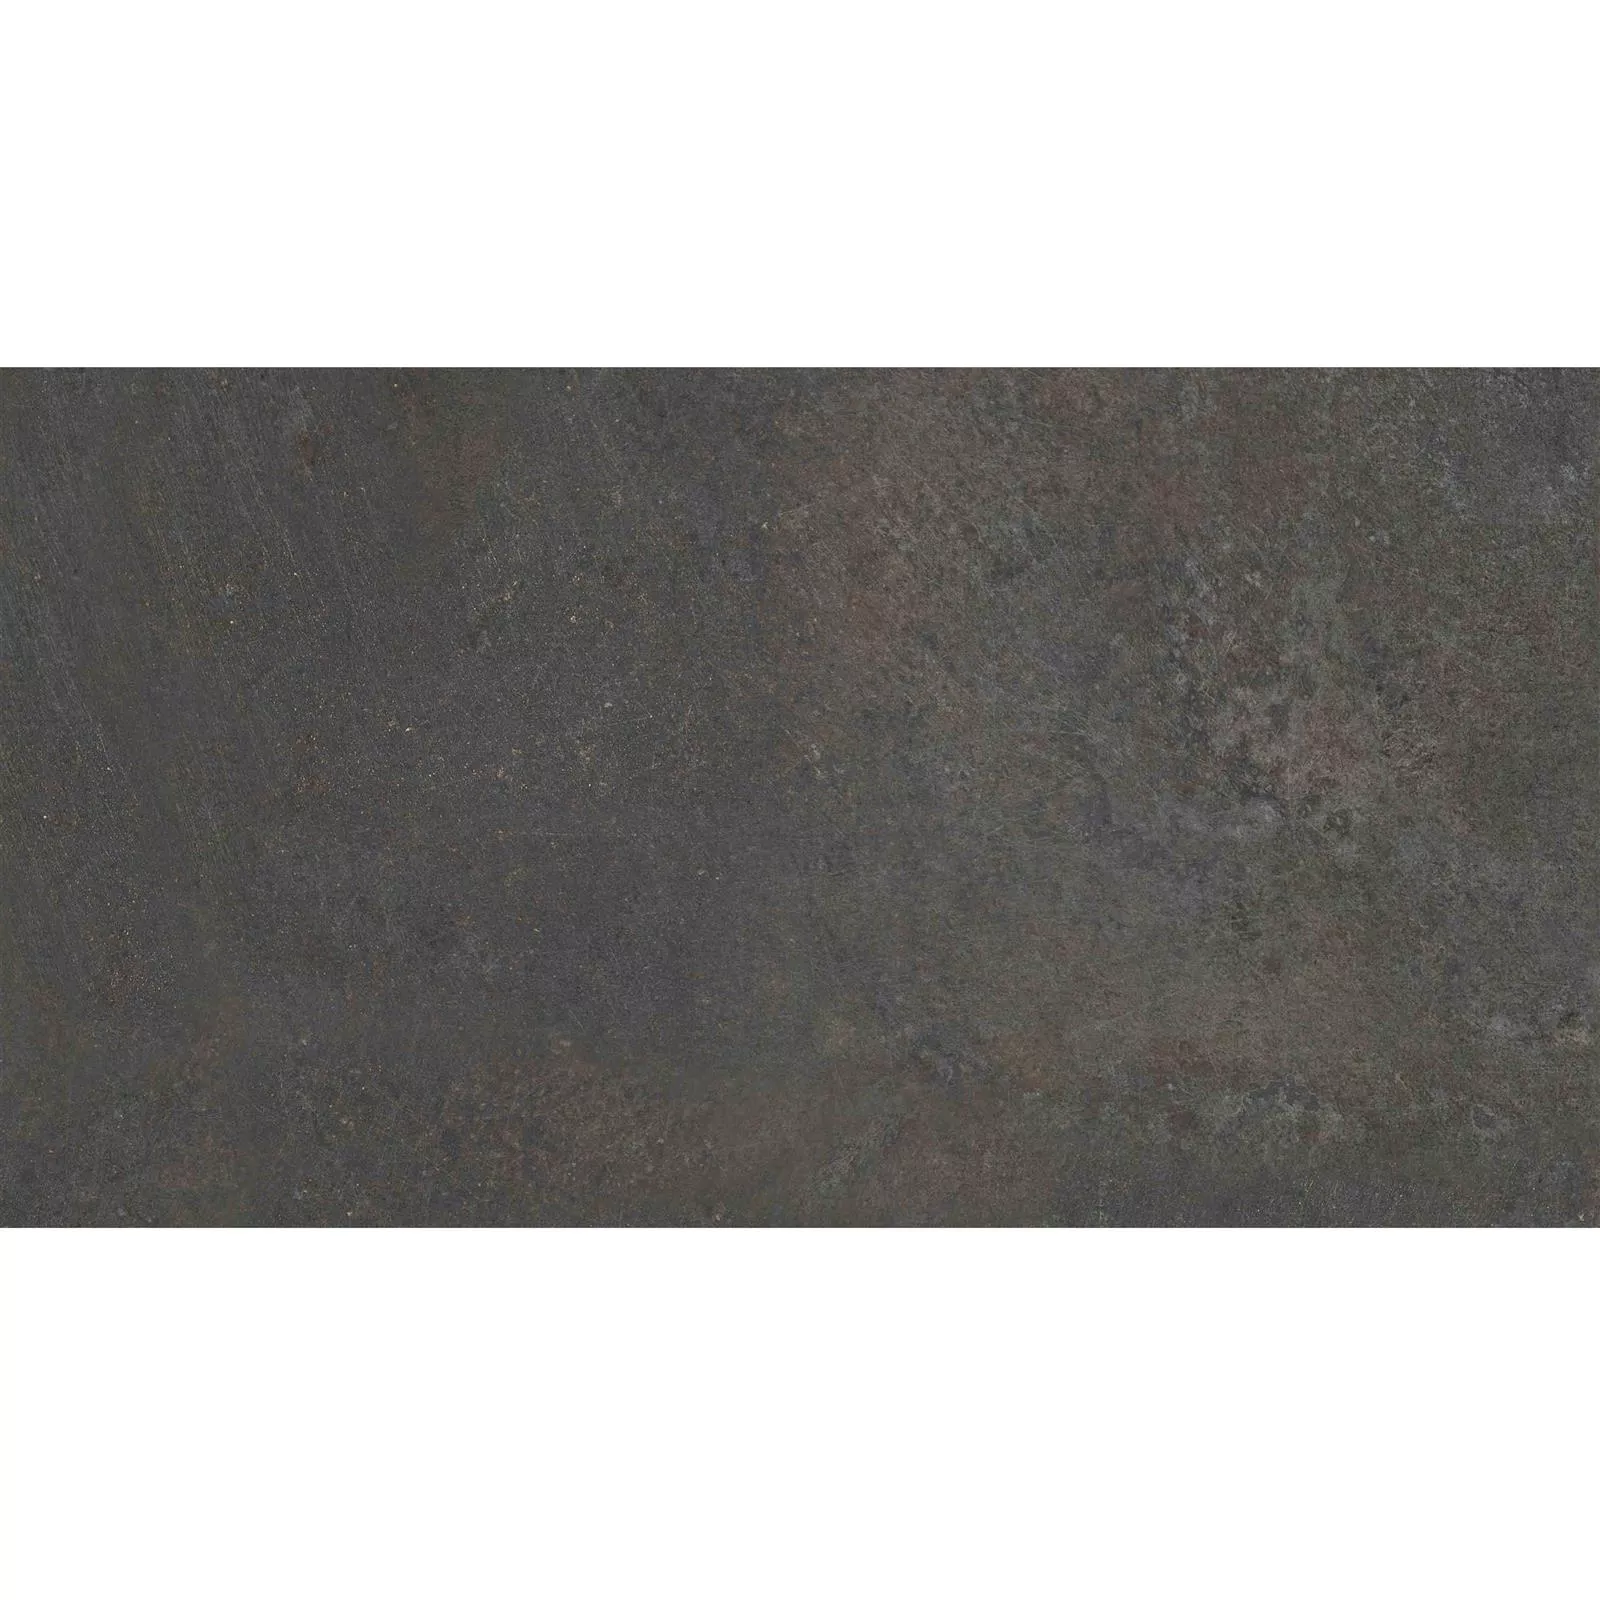 Πλακάκια Δαπέδου Peaceway Ανθρακίτης 30x60cm